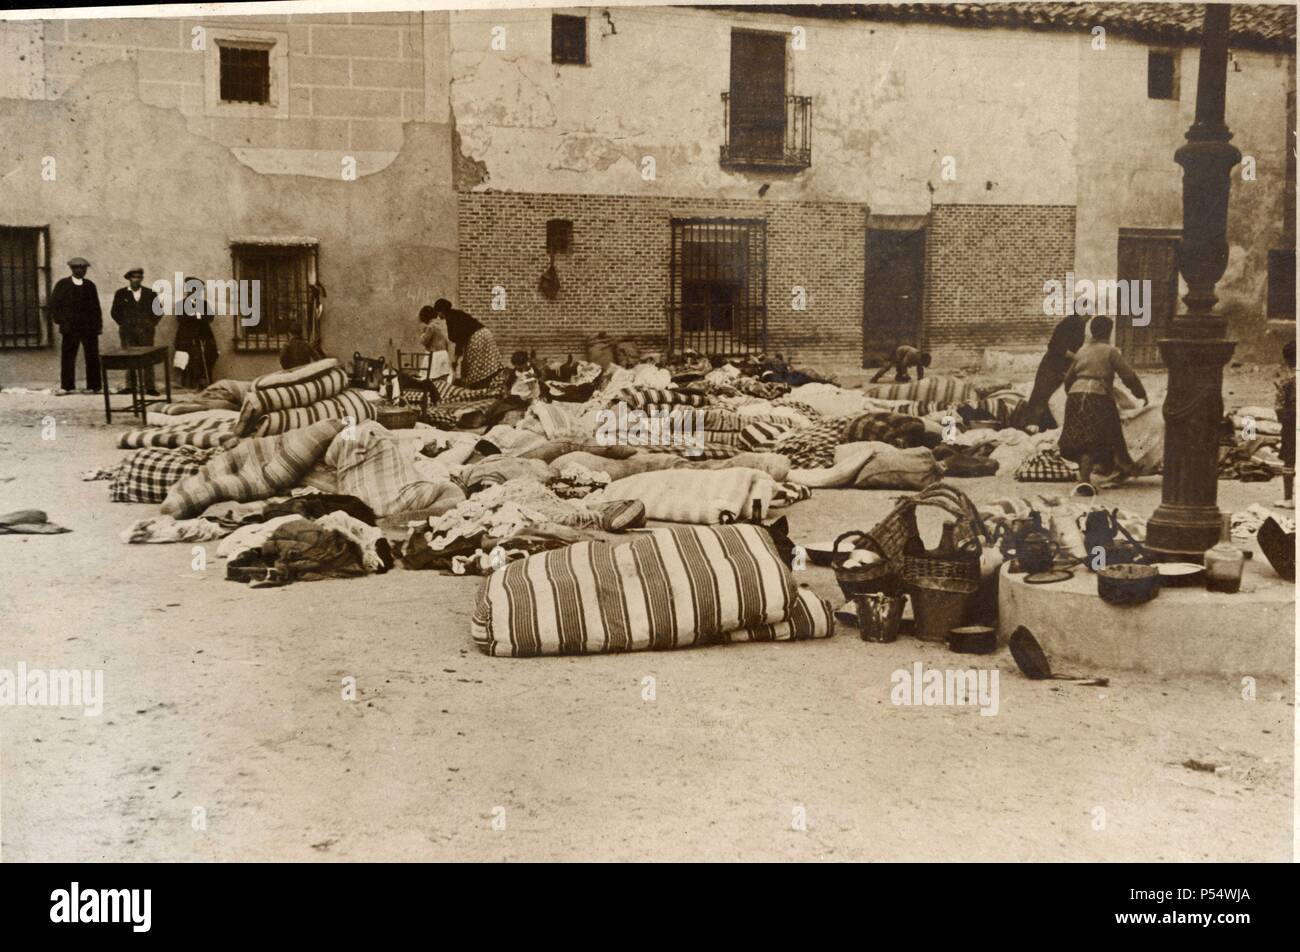 España, guerra civil. La población madrileña huye en desorden ante la invasión del ejército nacionalista. Año 1938. Stock Photo